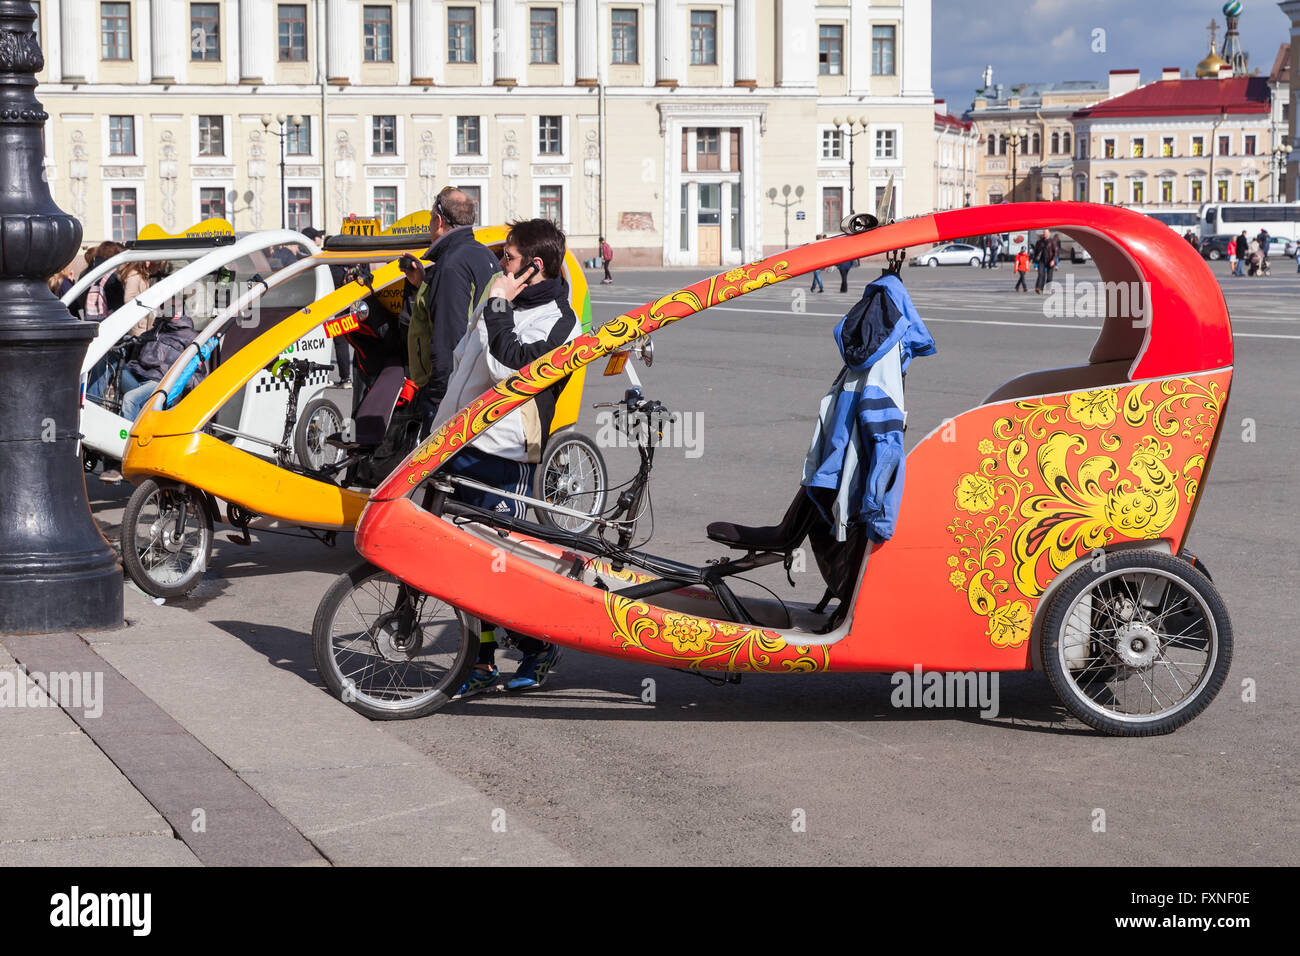 Saint-pétersbourg, Russie - 9 Avril 2016 : Ville location les chauffeurs de taxi attendent les passagers sur la place du palais de Saint-Pétersbourg Banque D'Images